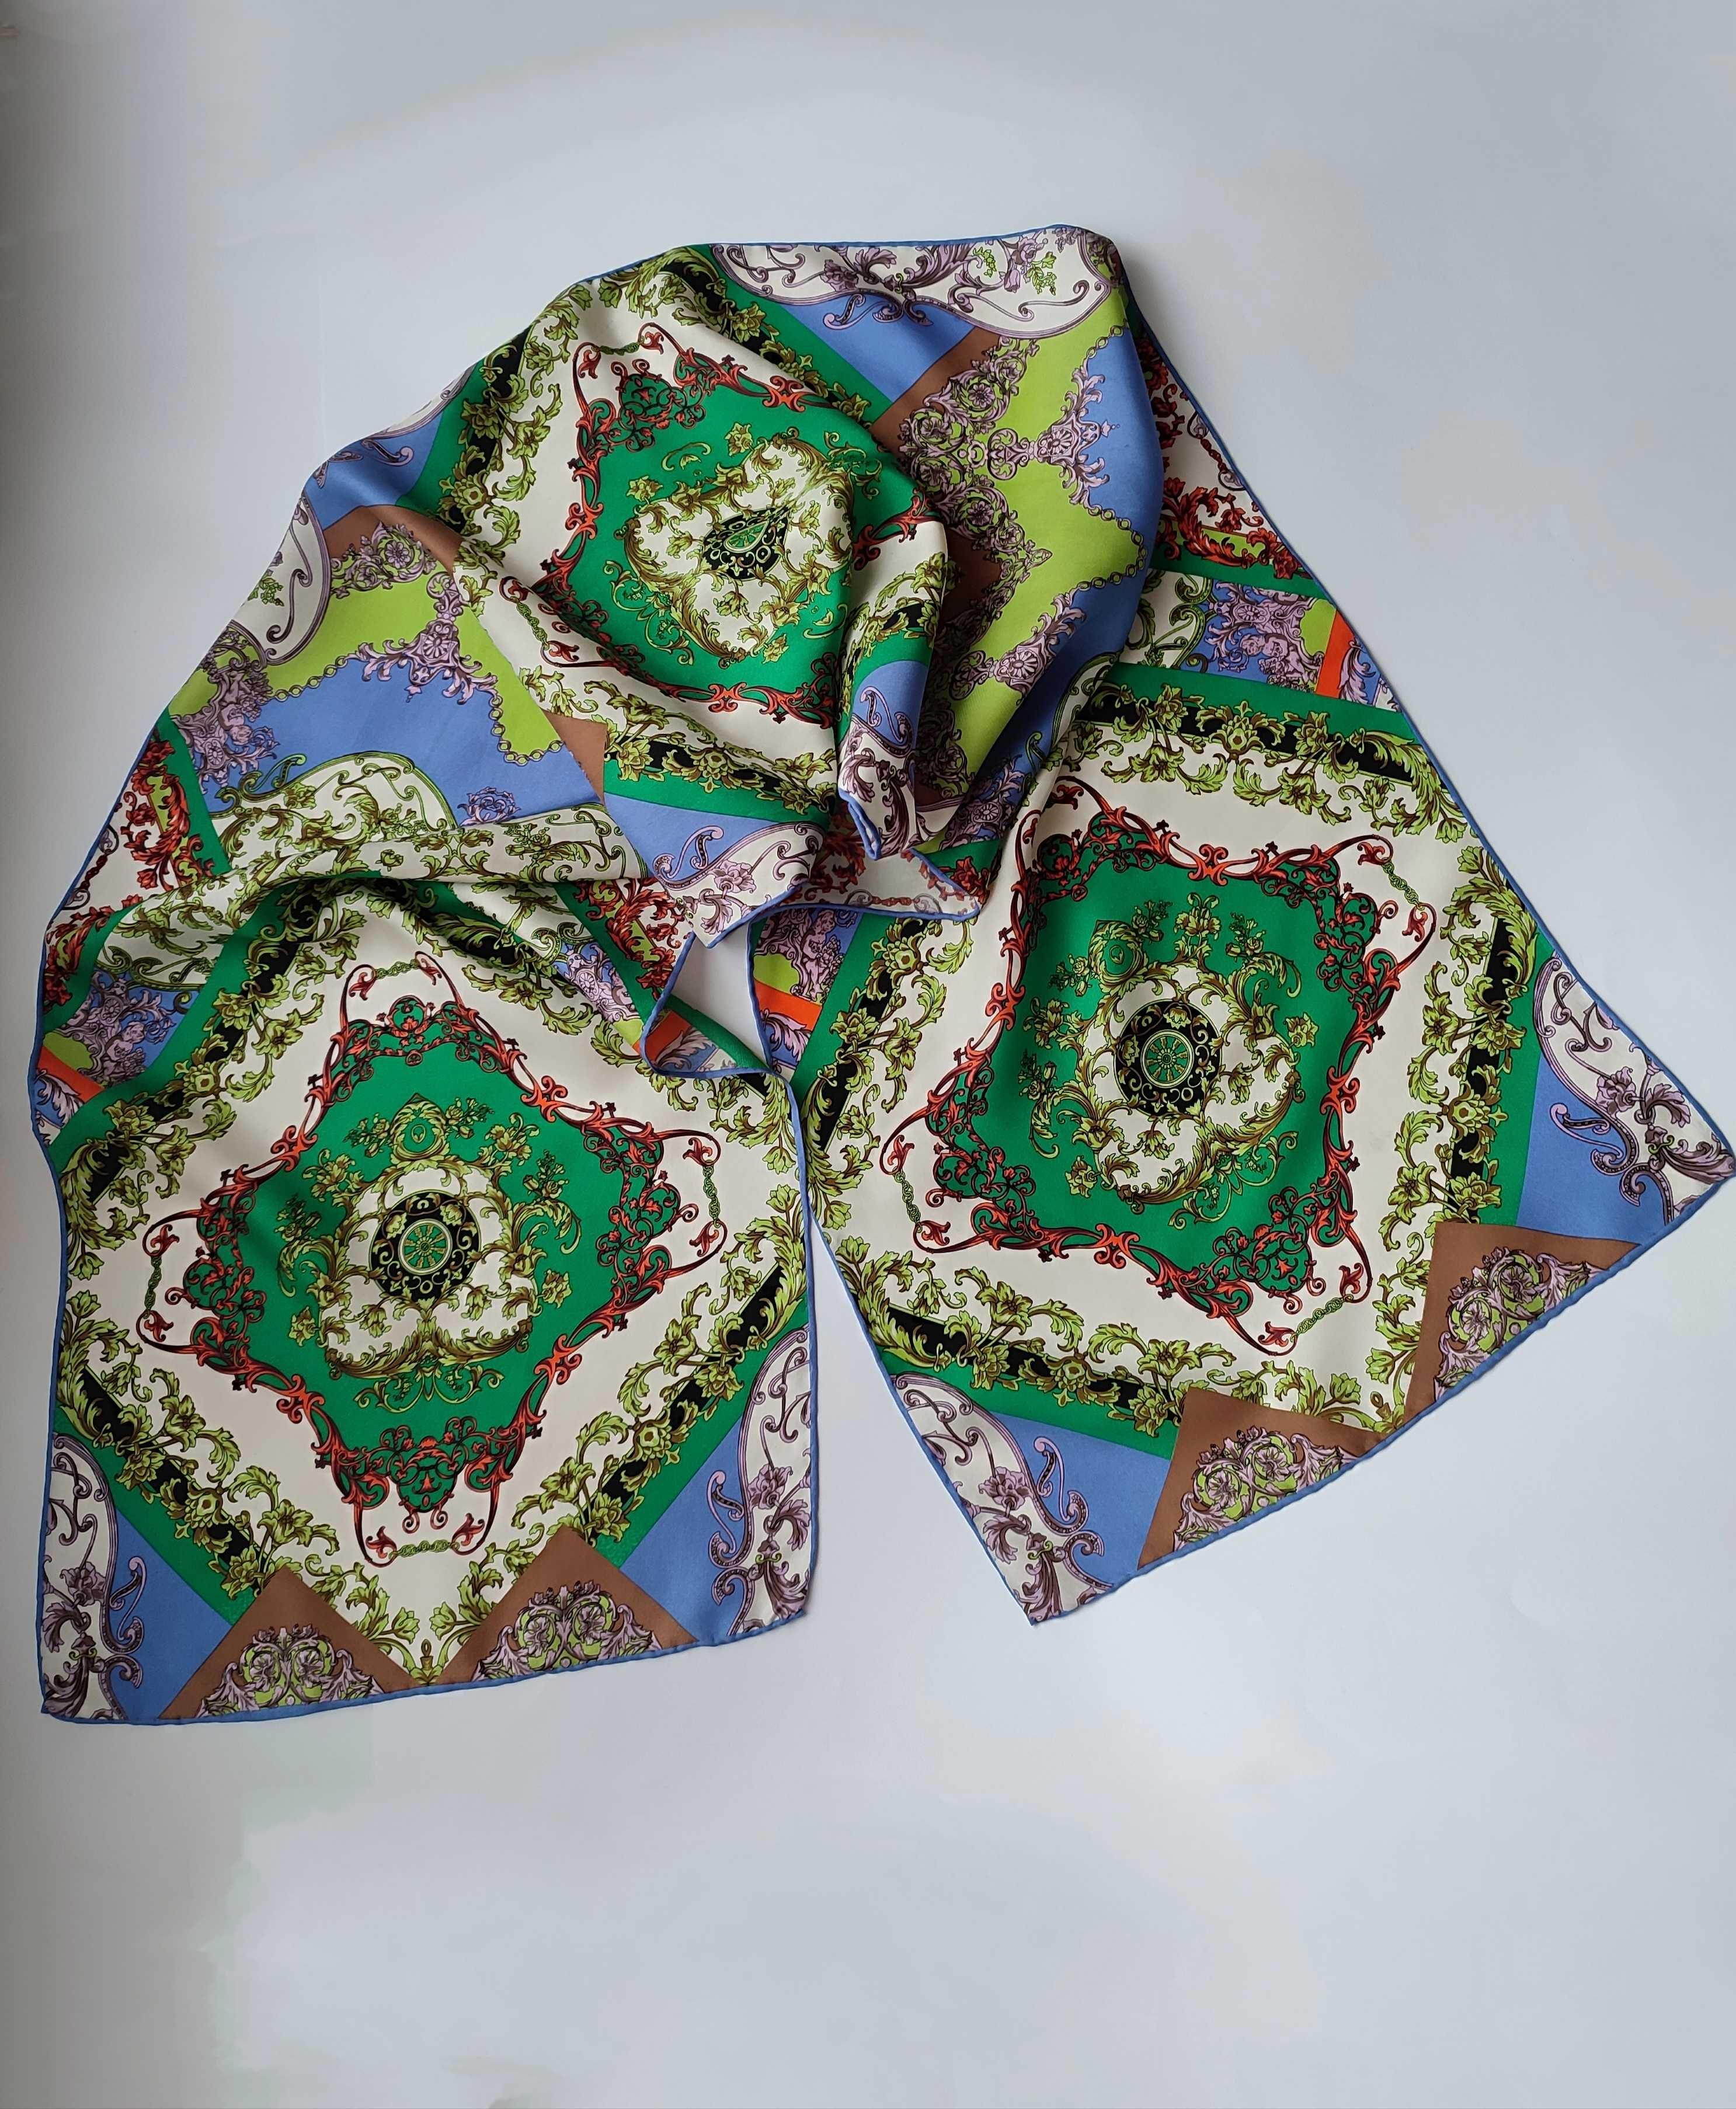 Шелковый палантин шарф платок,
100%шелк, шов роуль